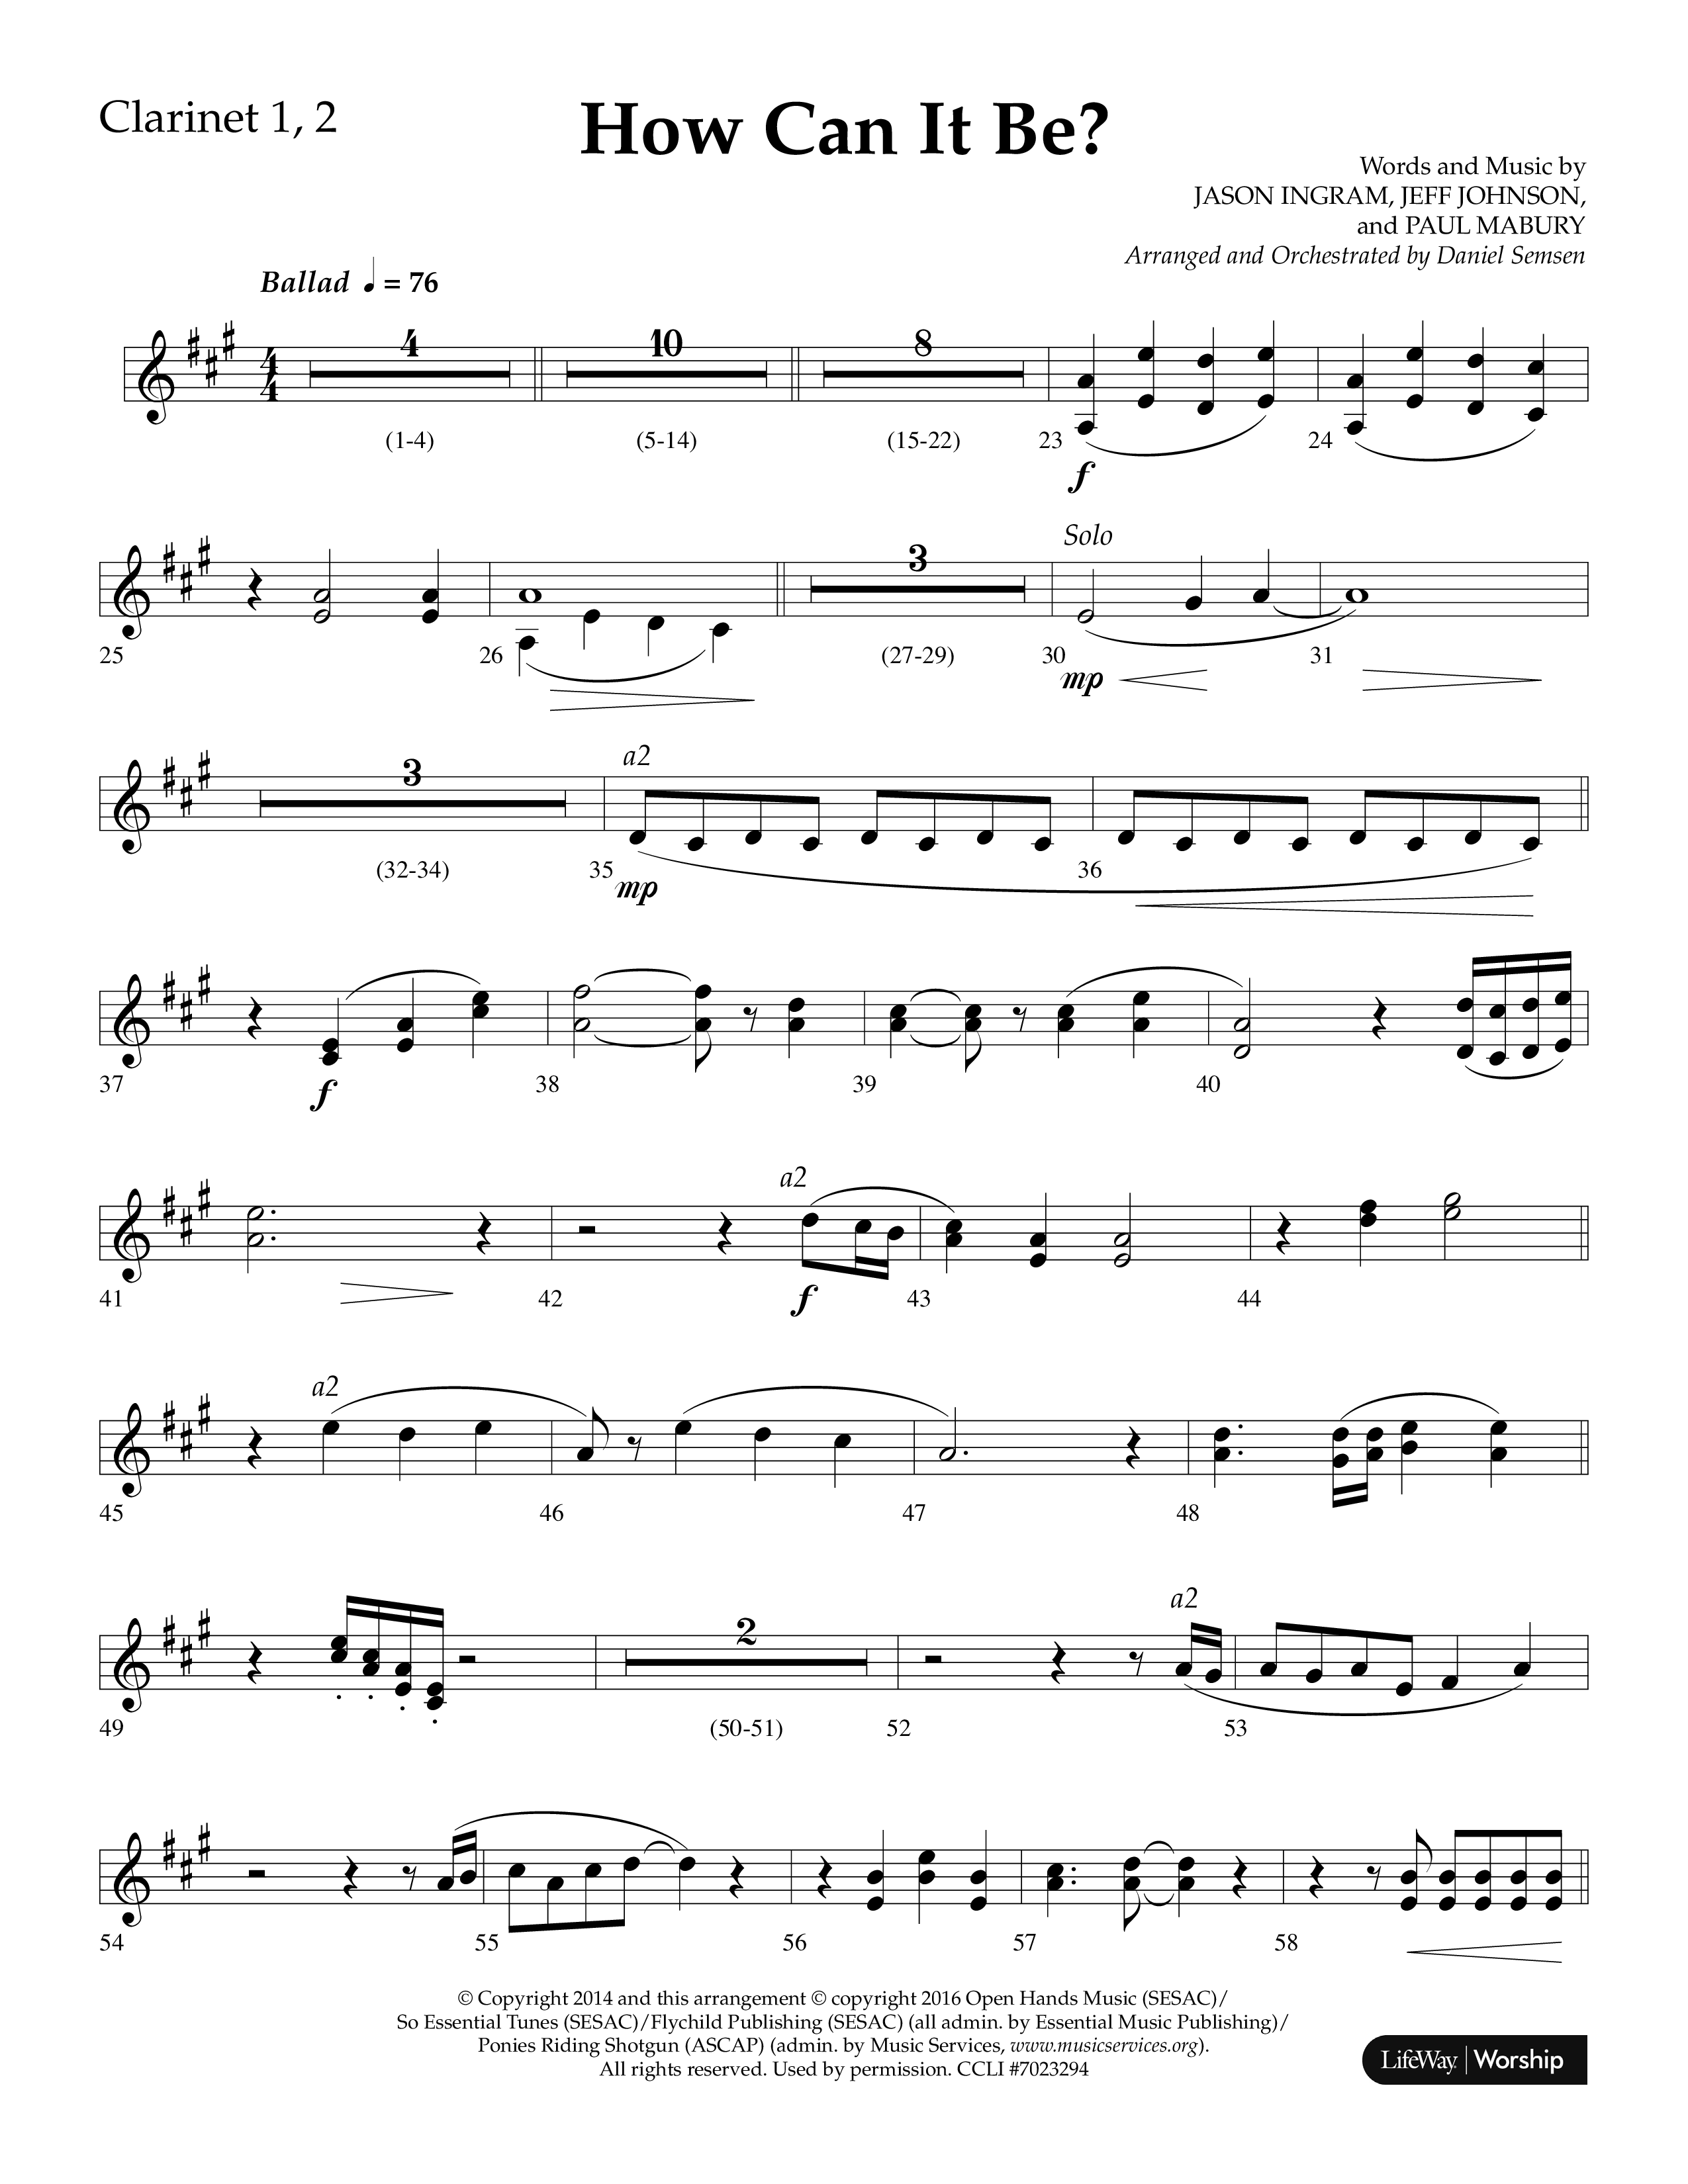 How Can It Be (Choral Anthem SATB) Clarinet 1/2 (Lifeway Choral / Arr. Daniel Semsen)